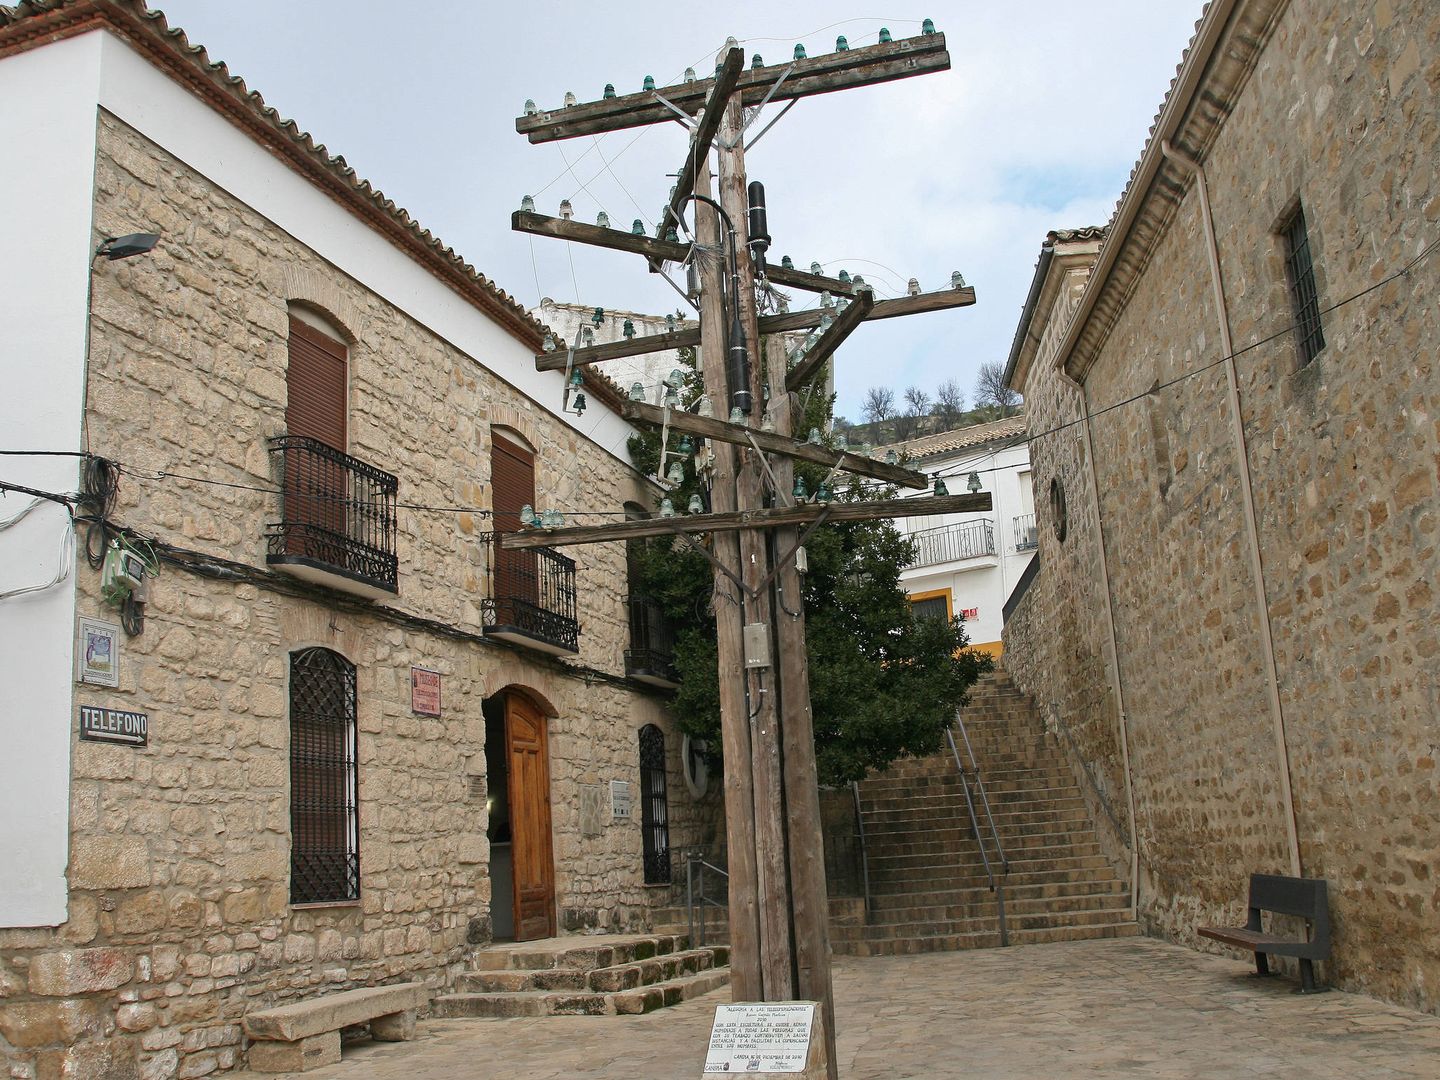 Entrada al Museo de Telecomunicaciones de Canena, con una escultura alegórica. (Imagen: Toño Ramos (Patrimonio de Telefonía) | Flickr)